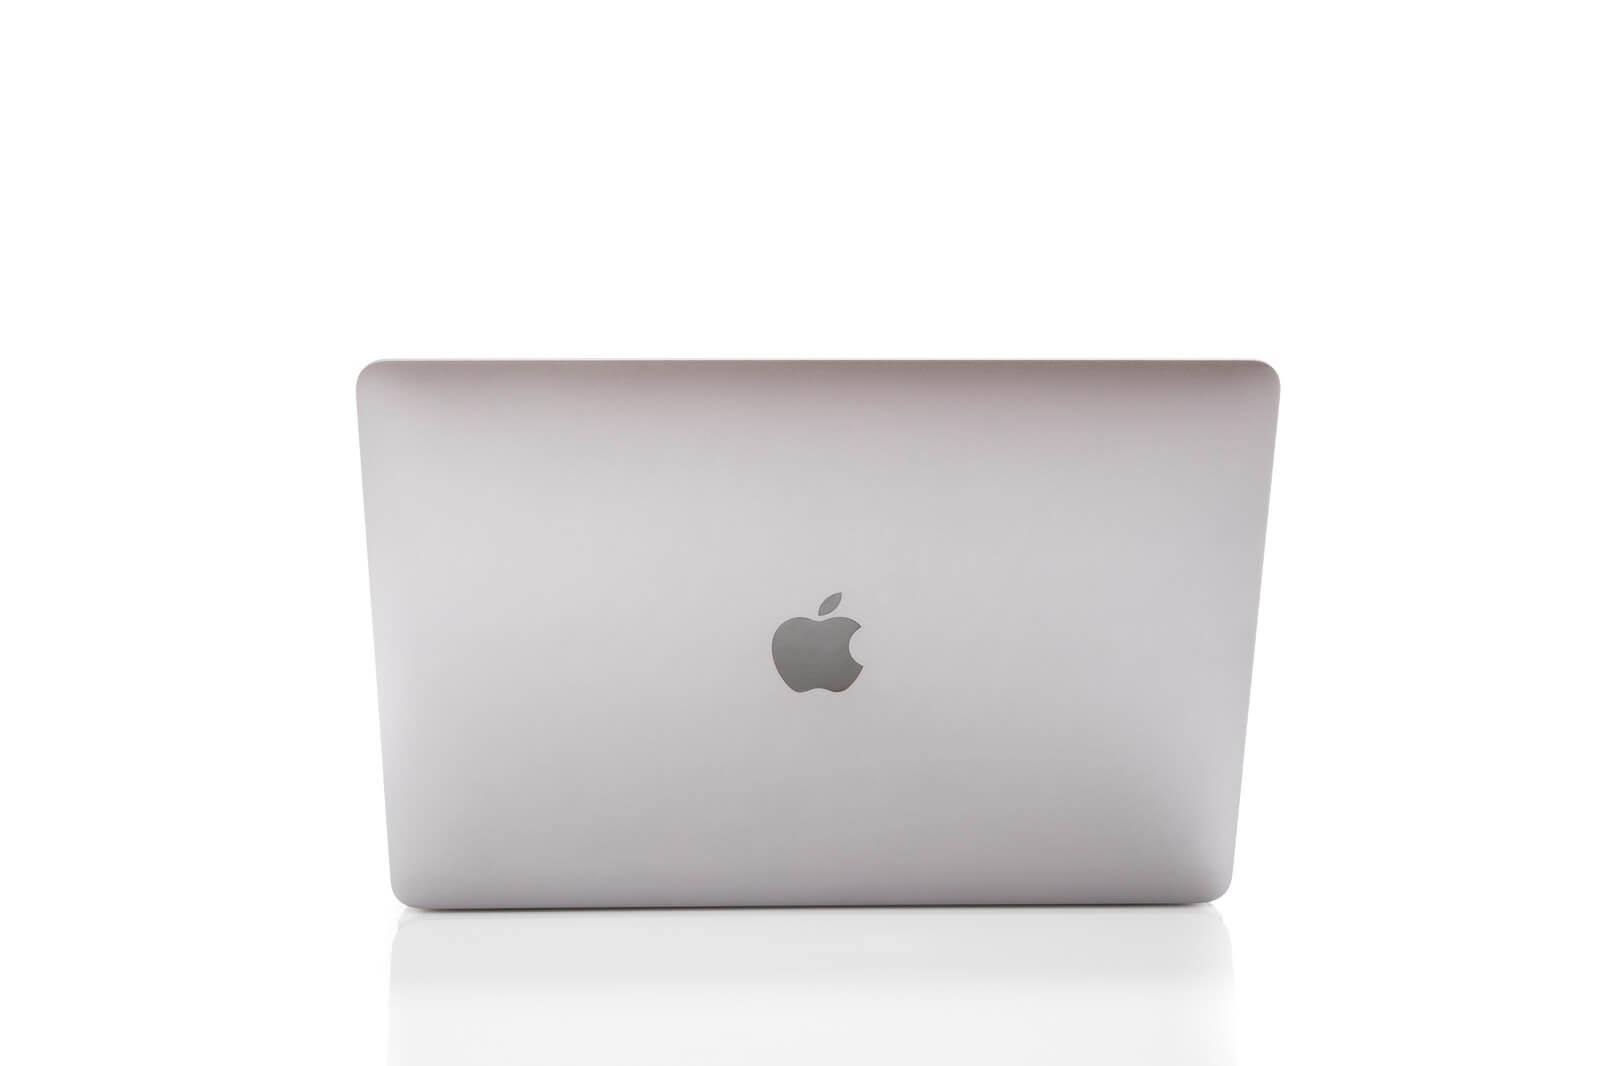 M1搭載MacBookAirとPro特徴や違いを比較 - イトマルブログ